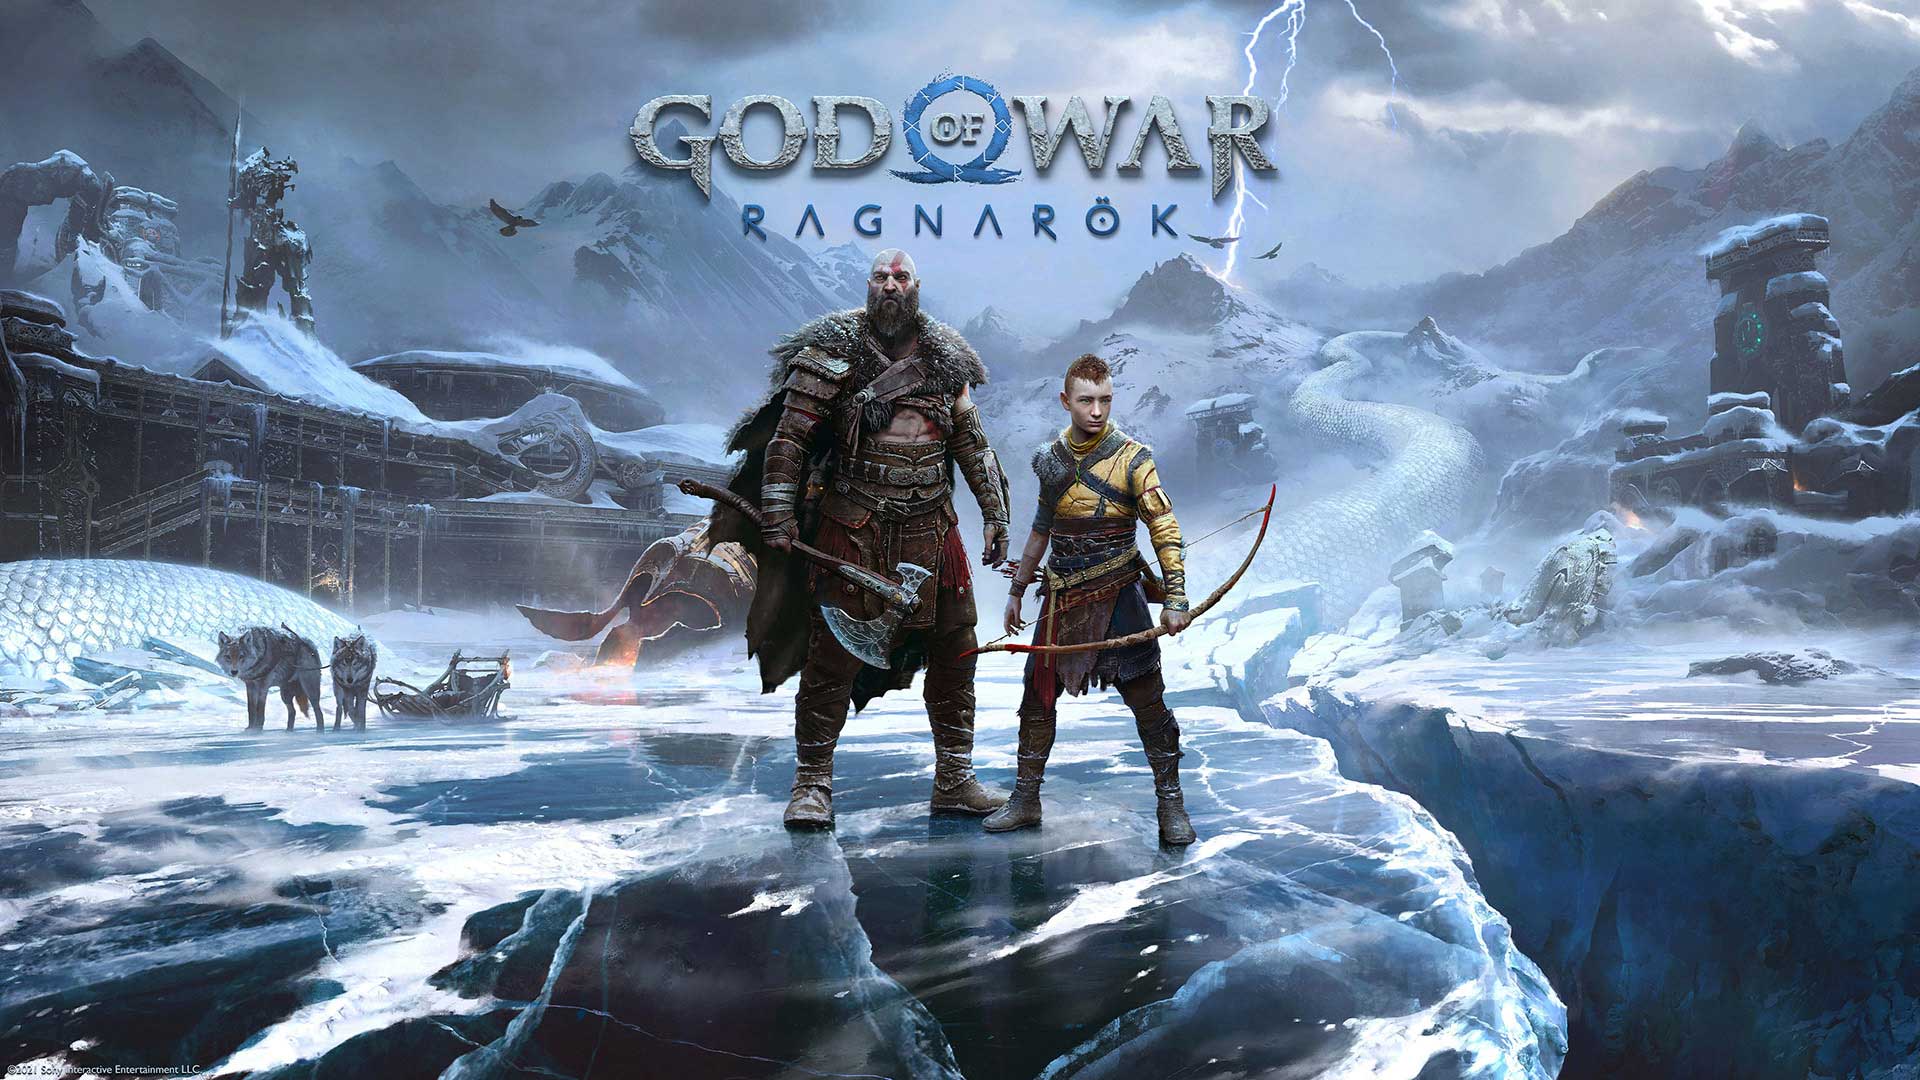 بازی خدای جنگ: رگناروک God of War Ragnarok: محصول 2022 سانتا مونیکا در انتظار انتشار!